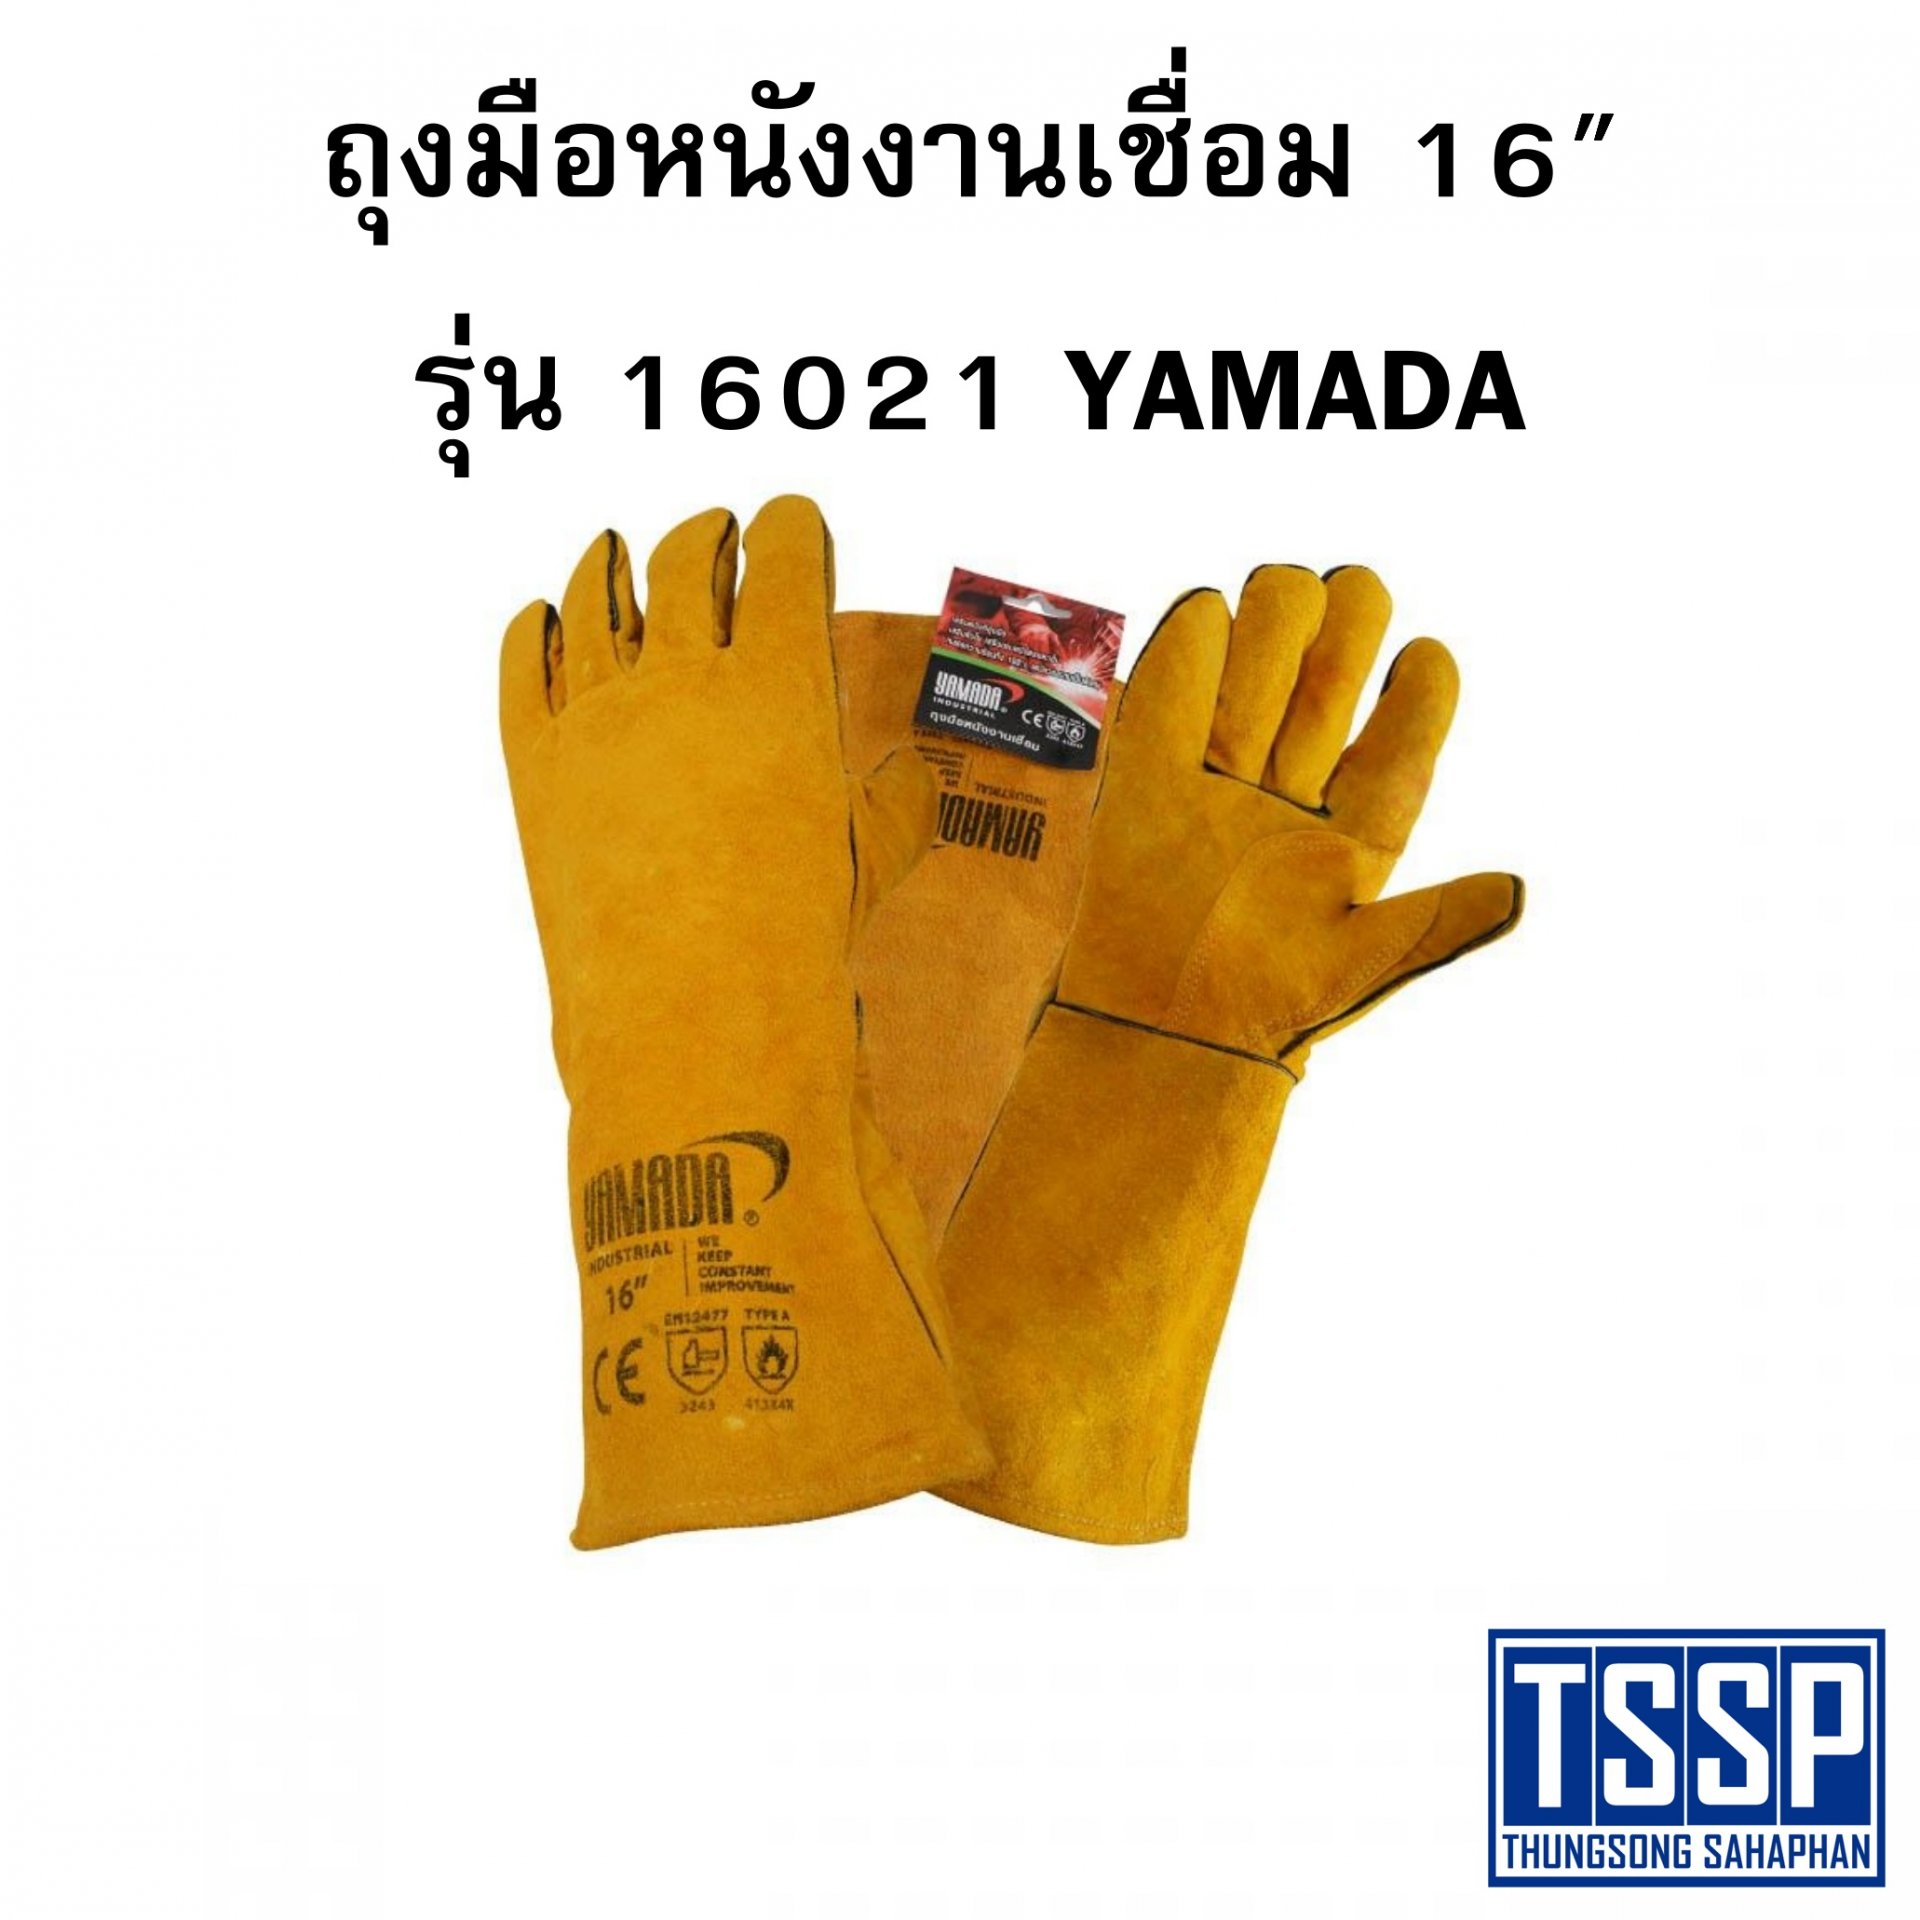 ถุงมือหนังงานเชื่อม 16" รุ่น 16021 YAMADA